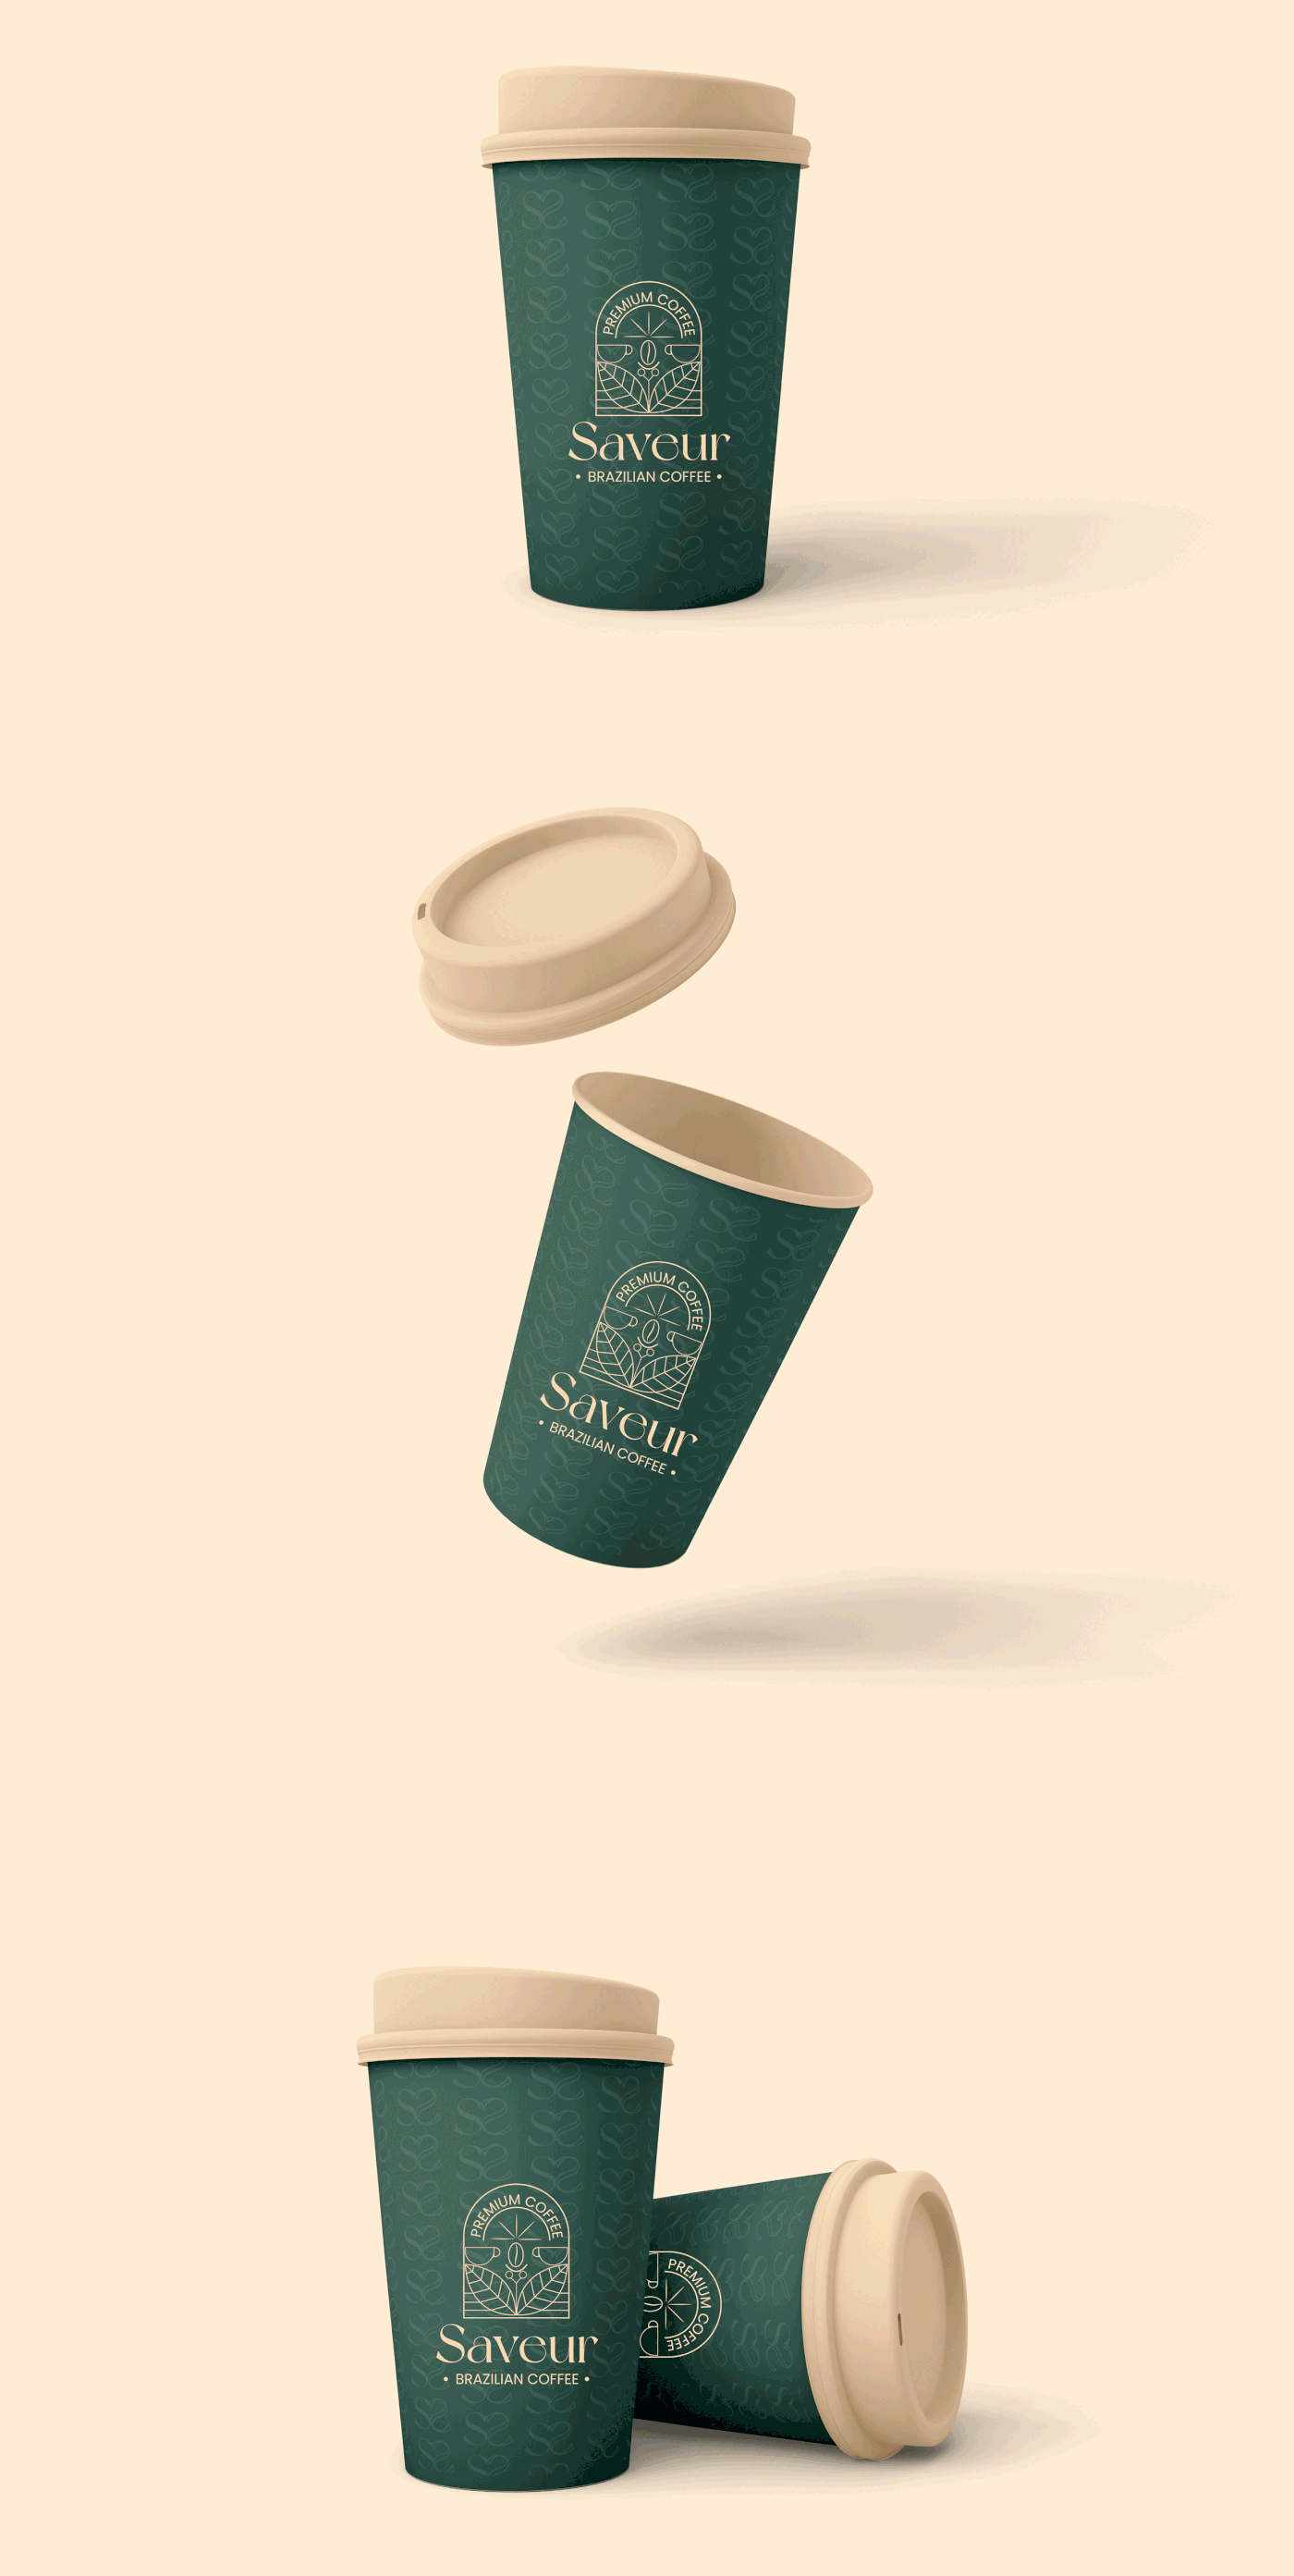 coffee l coffee label l coffee packaging l Restaurant l cafe l food l bakery l logo design